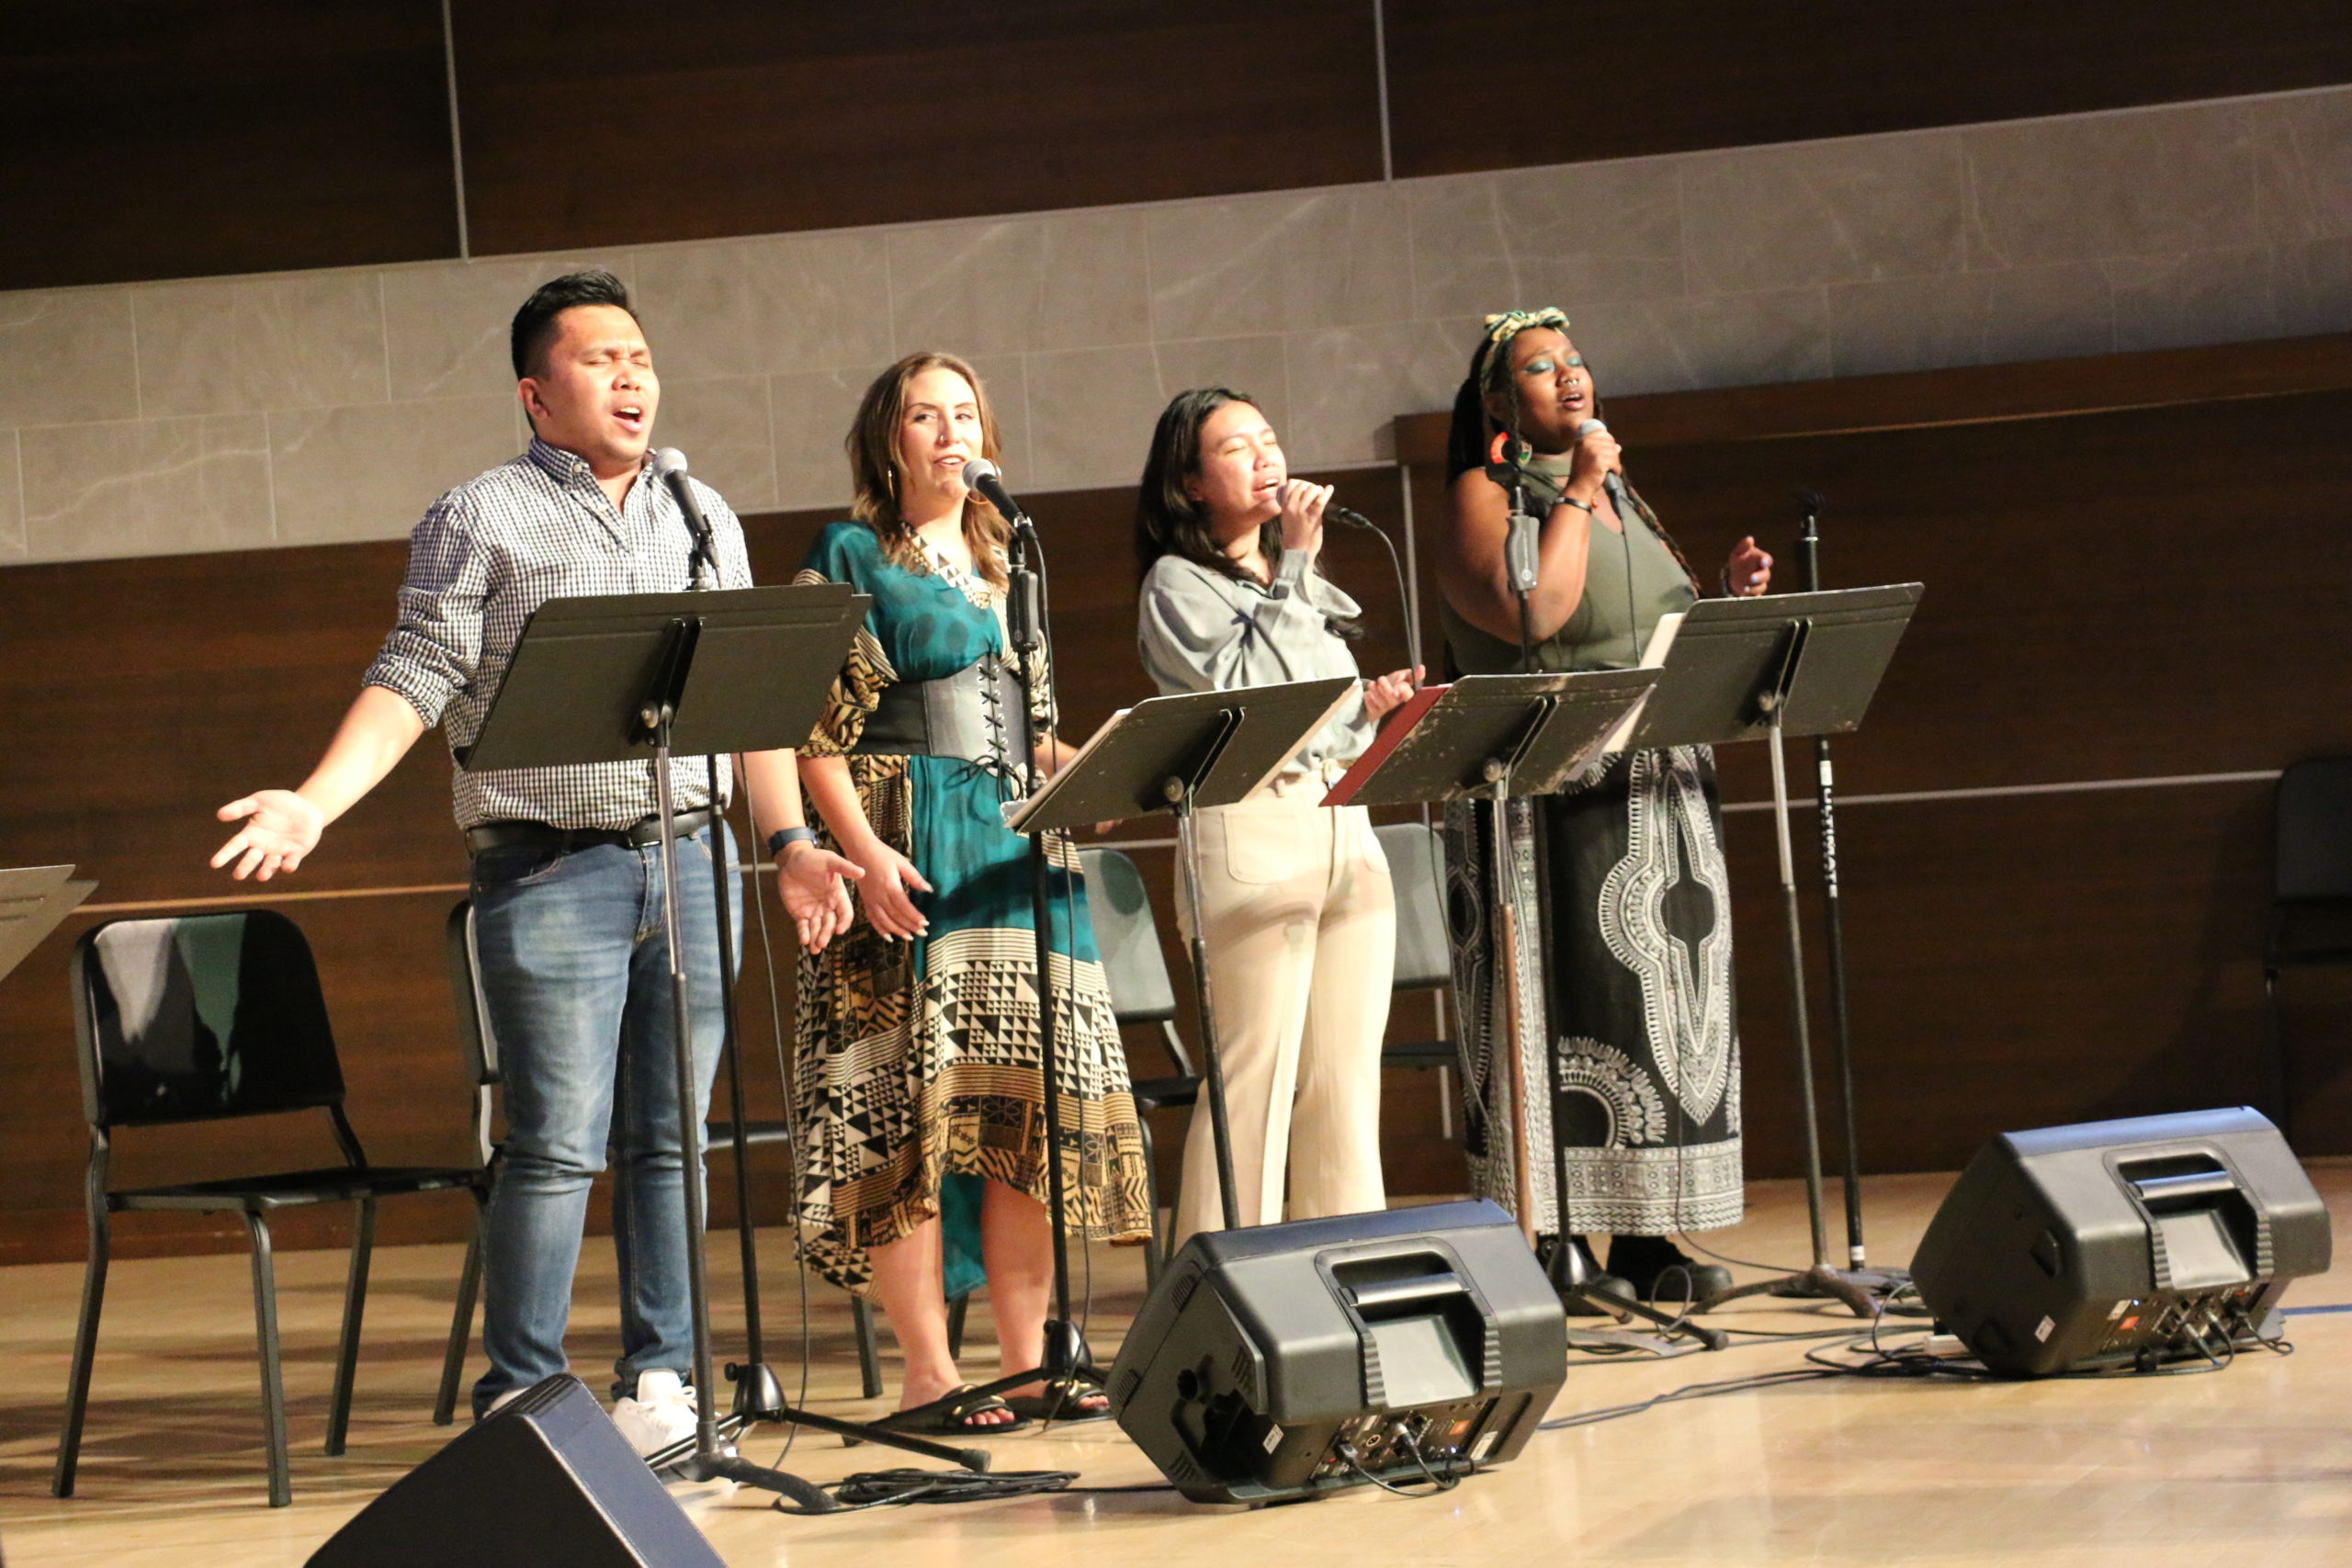 worship band singing during opening worship